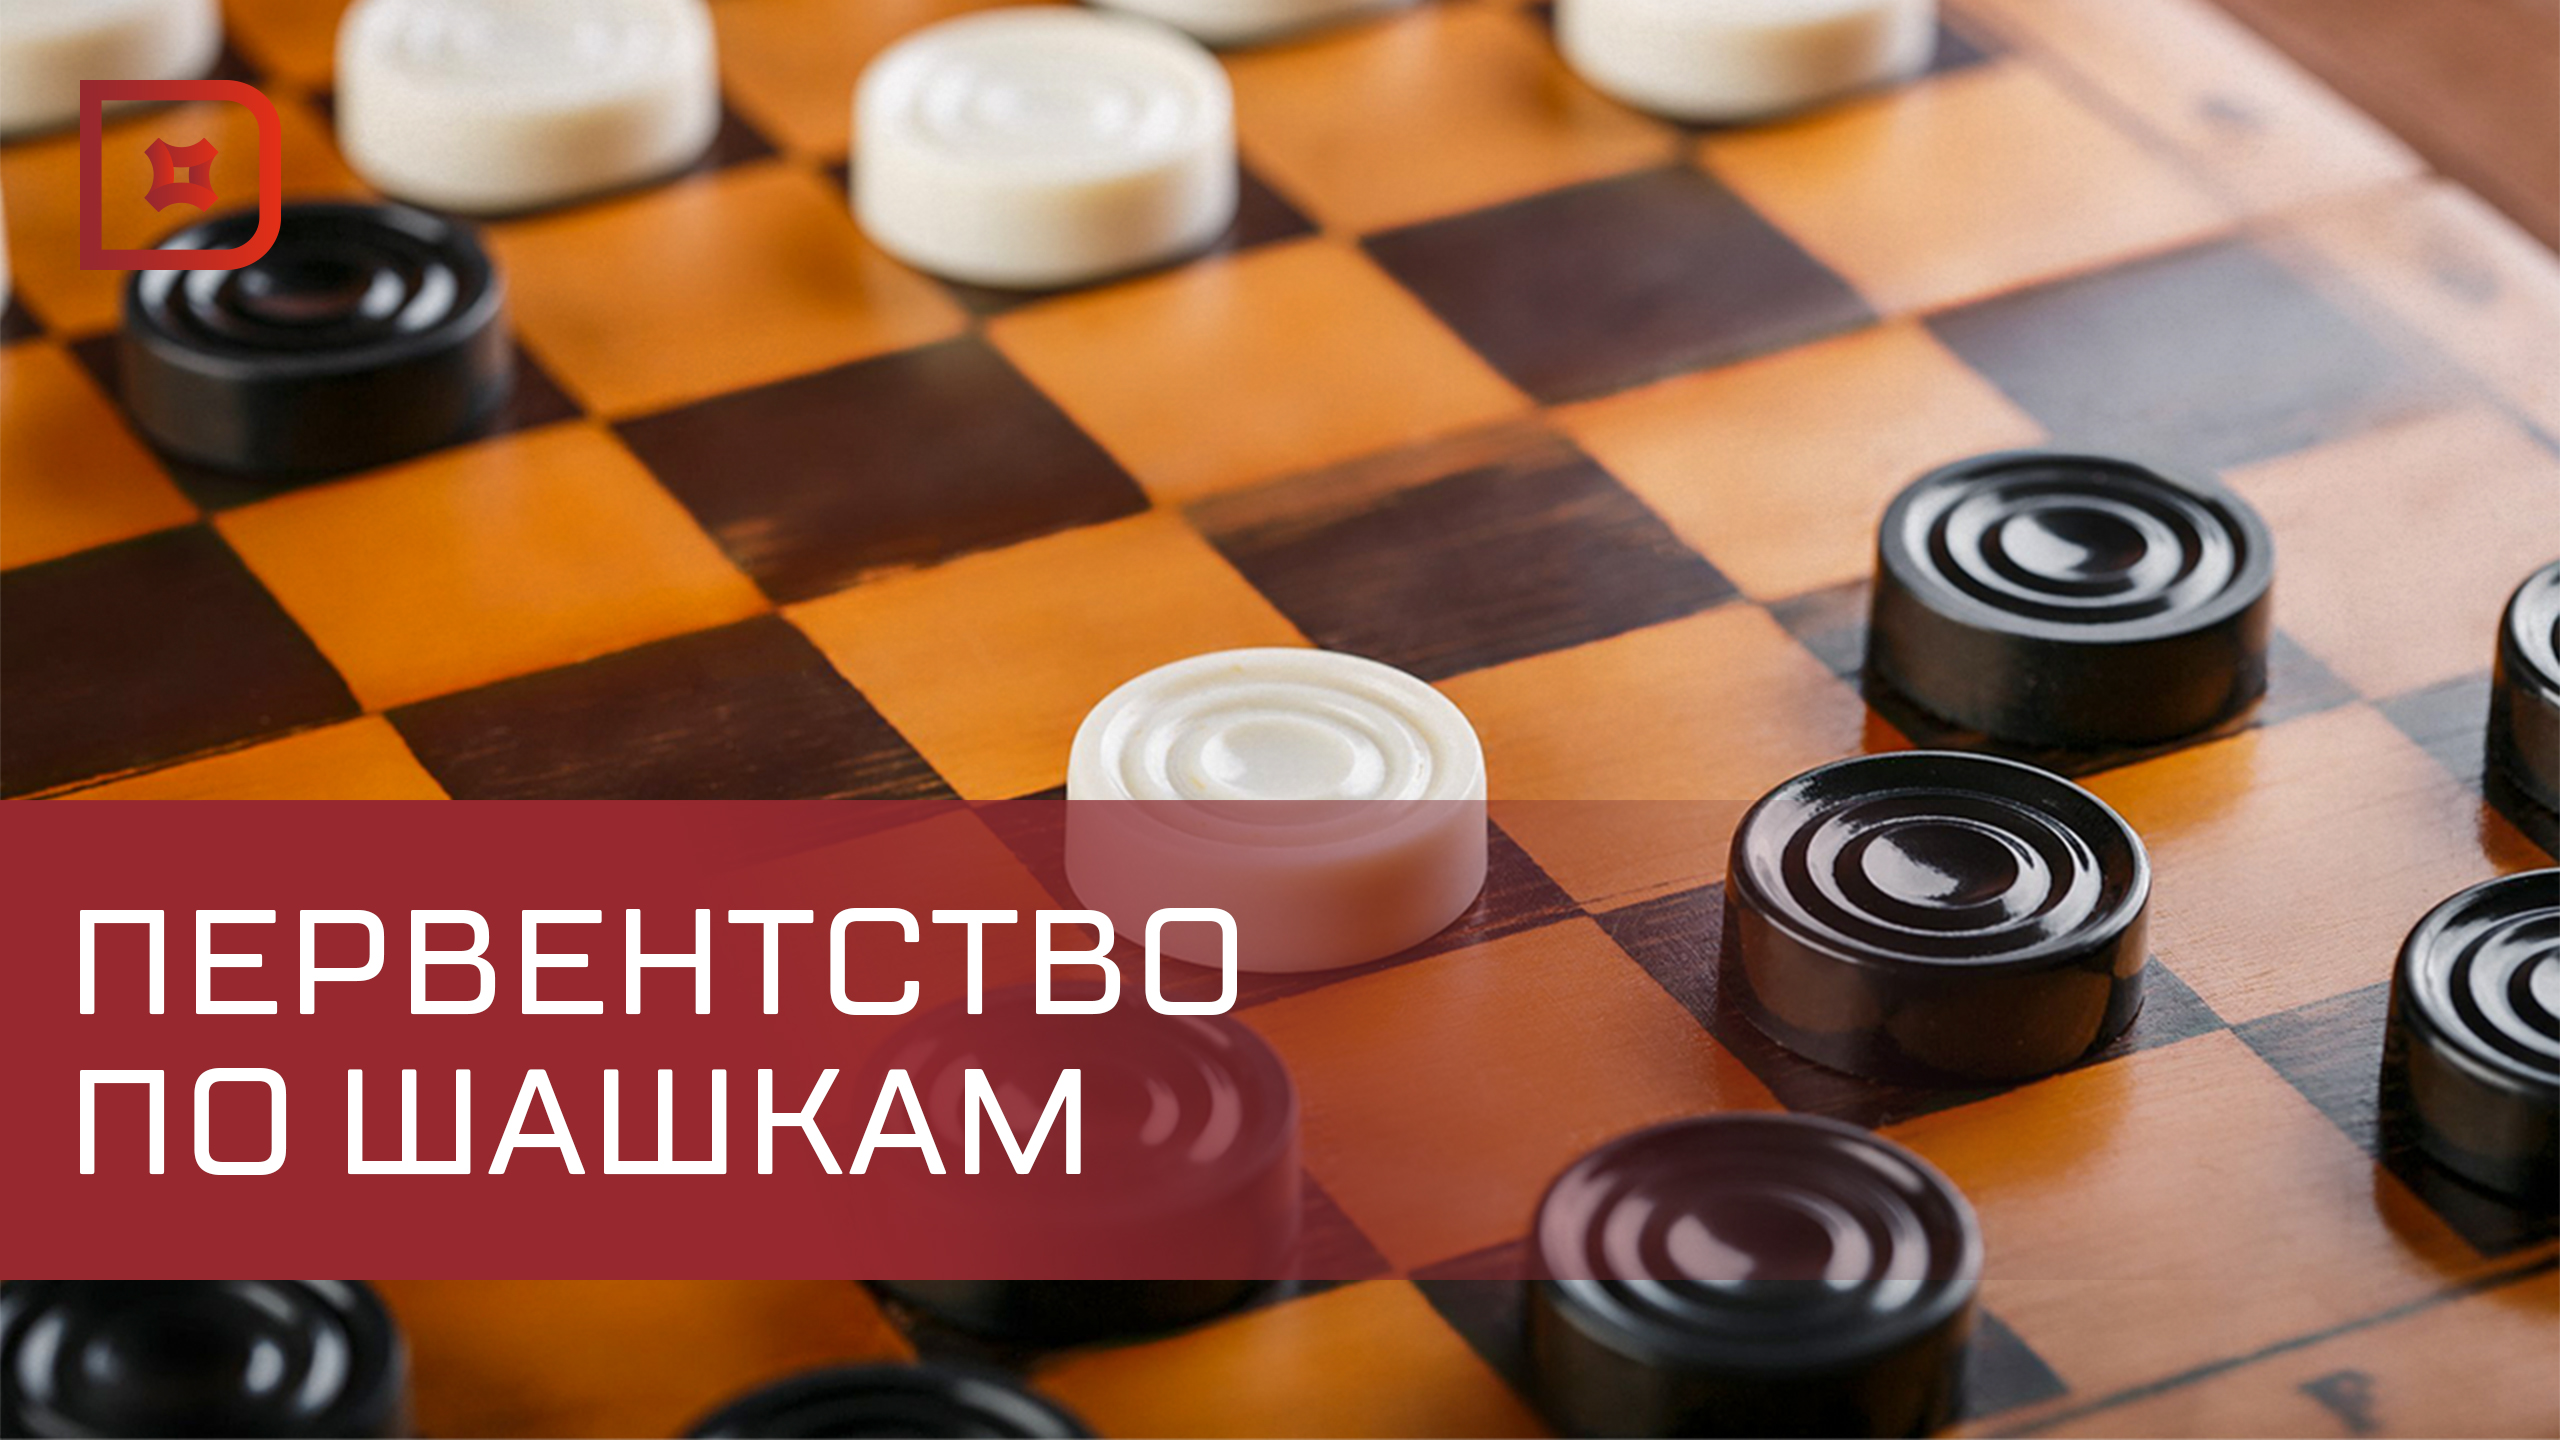 В Махачкале завершилось первенство Дагестана по шашкам